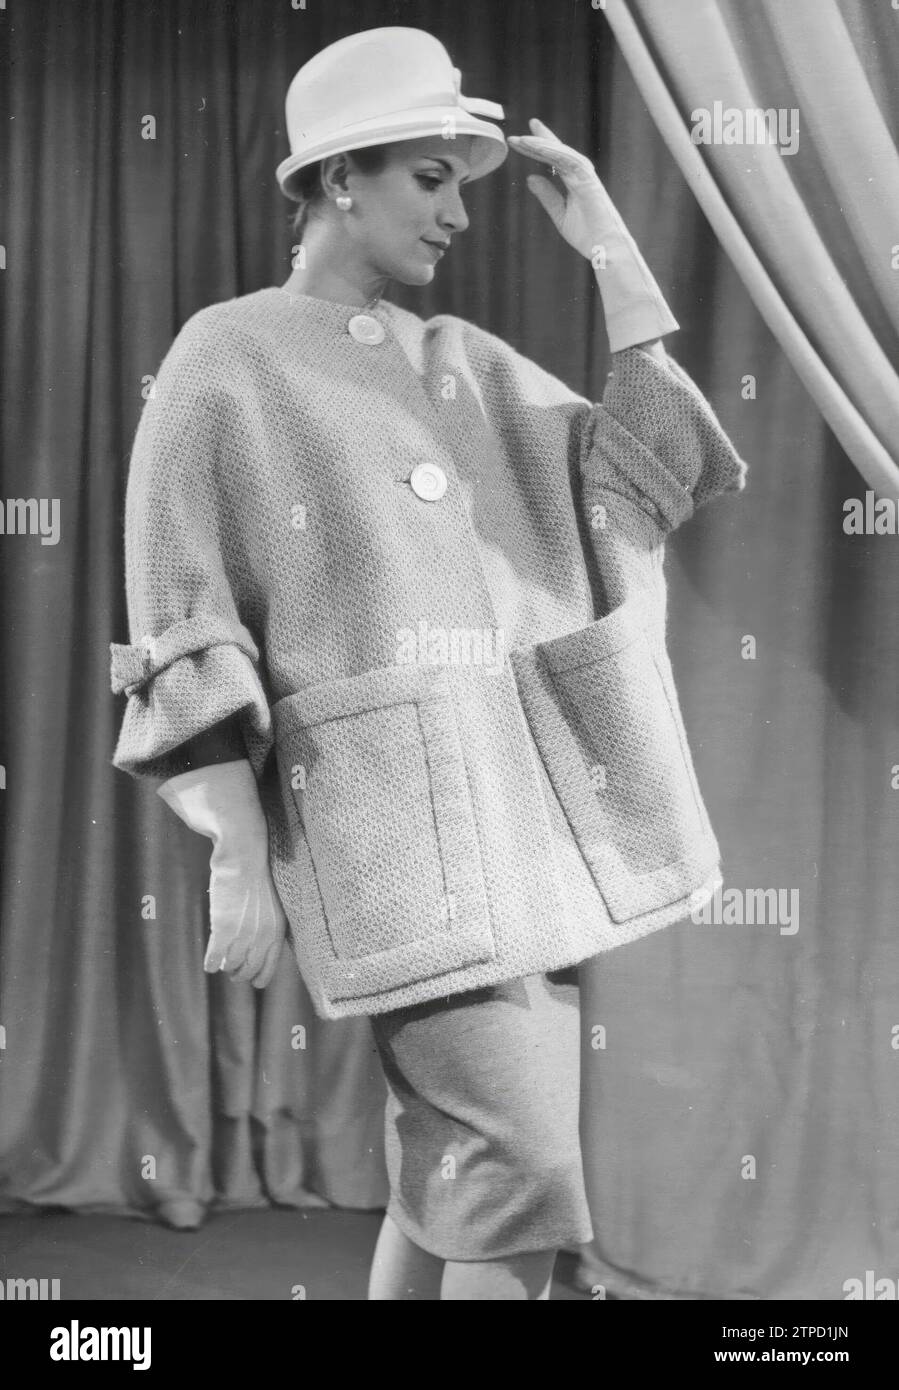 12/31/1958. Im Bild eine Tweed-Jacke in zwei Rosa-Tönen. Die geraden Hülsen haben unten zwei dreieckige Teile, die die Bewegung der Arme ermöglichen, wie das Modell zeigt. Quelle: Album / Archivo ABC / Torremocha Stockfoto